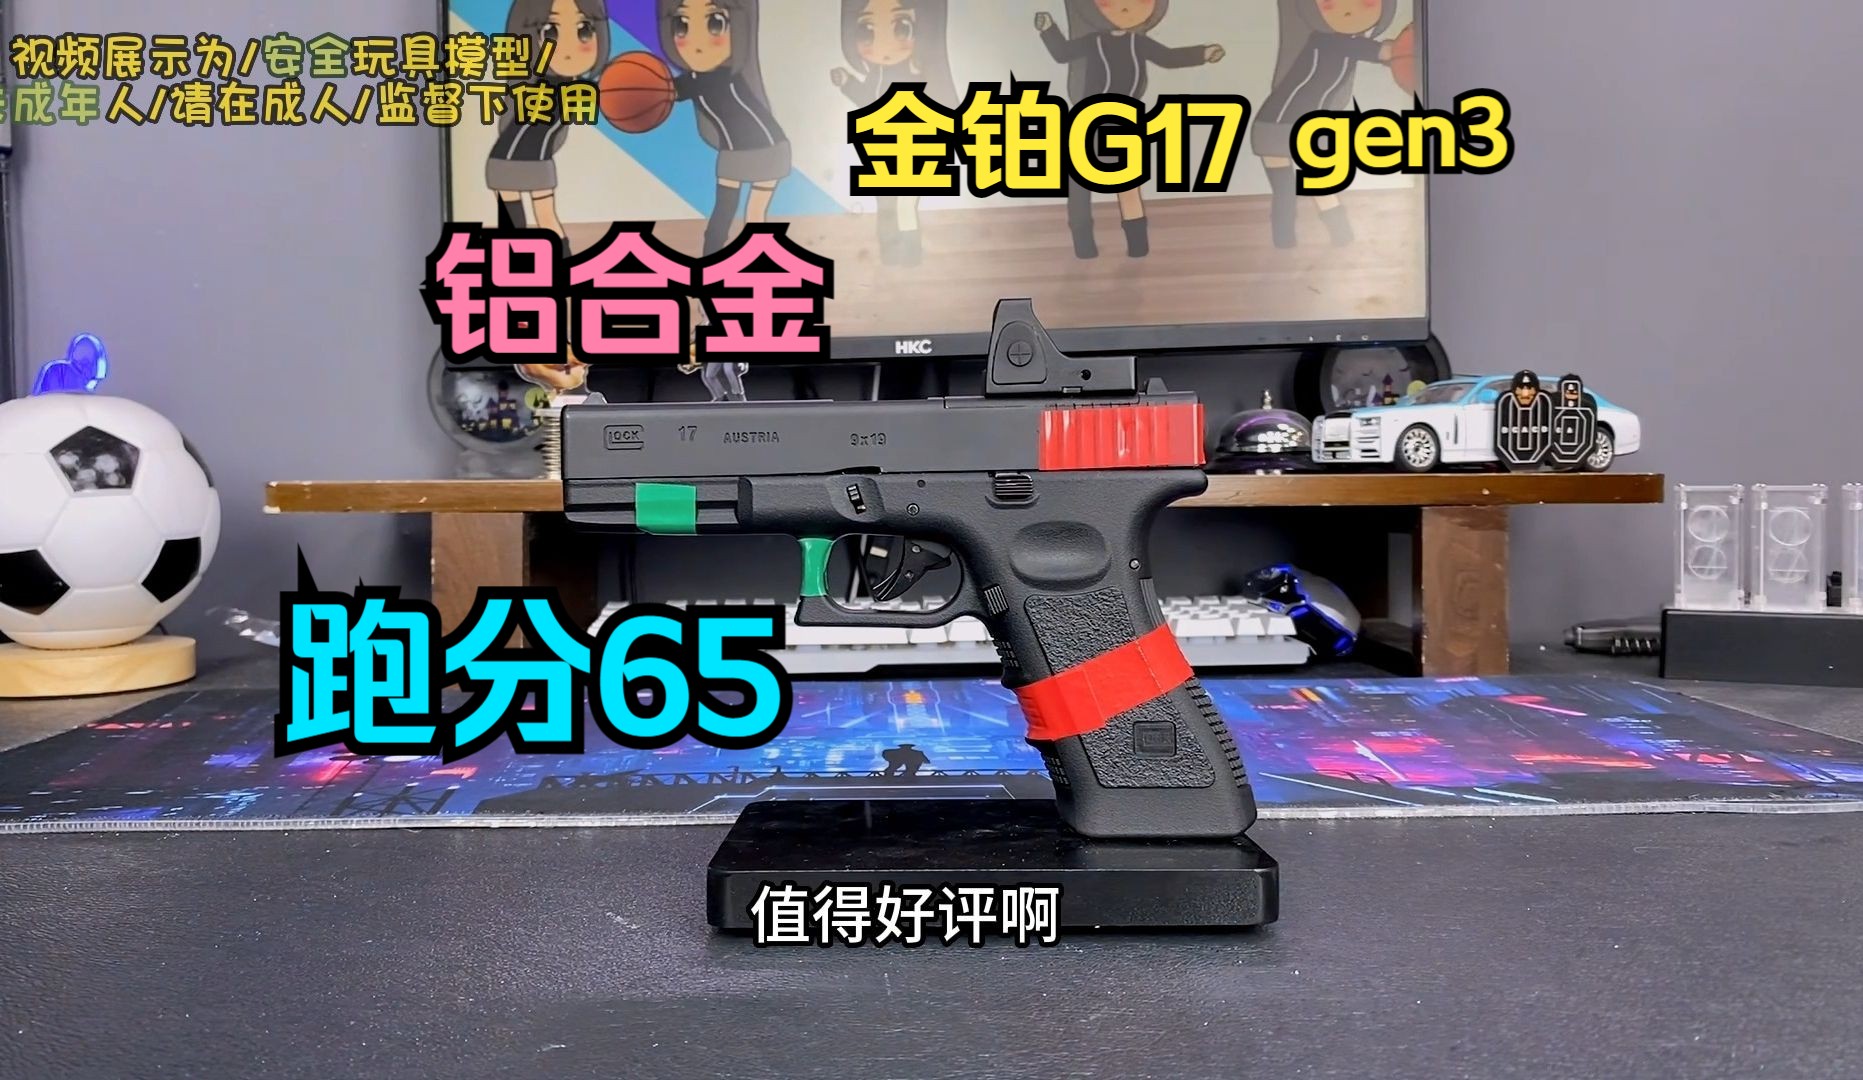 跑分65？？全行程铝滑Glock g17gen3玩具模型，金铂23年收官之作